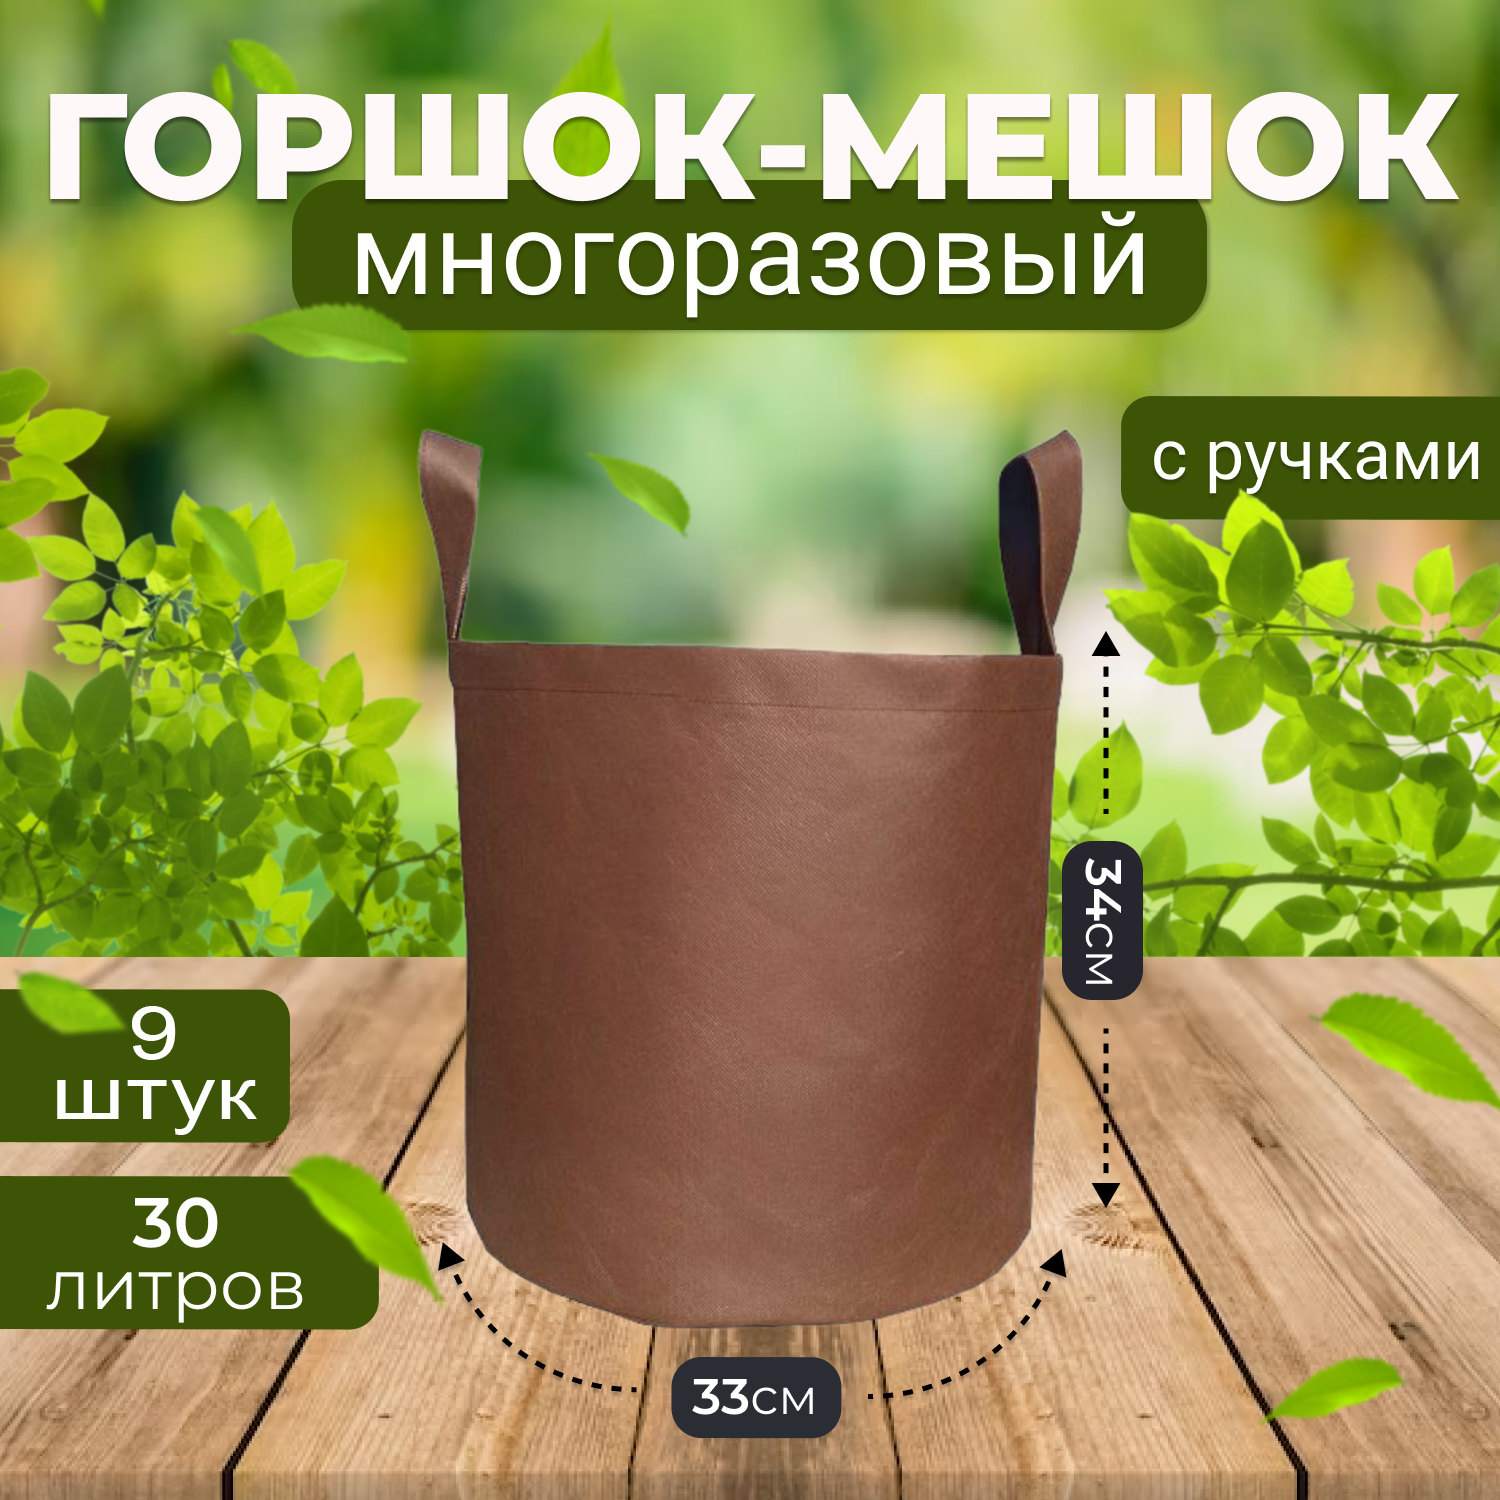 Мешок горшок текстильный из спанбонда Grower Green 30_litrov-Brown_9 30л., 9шт.